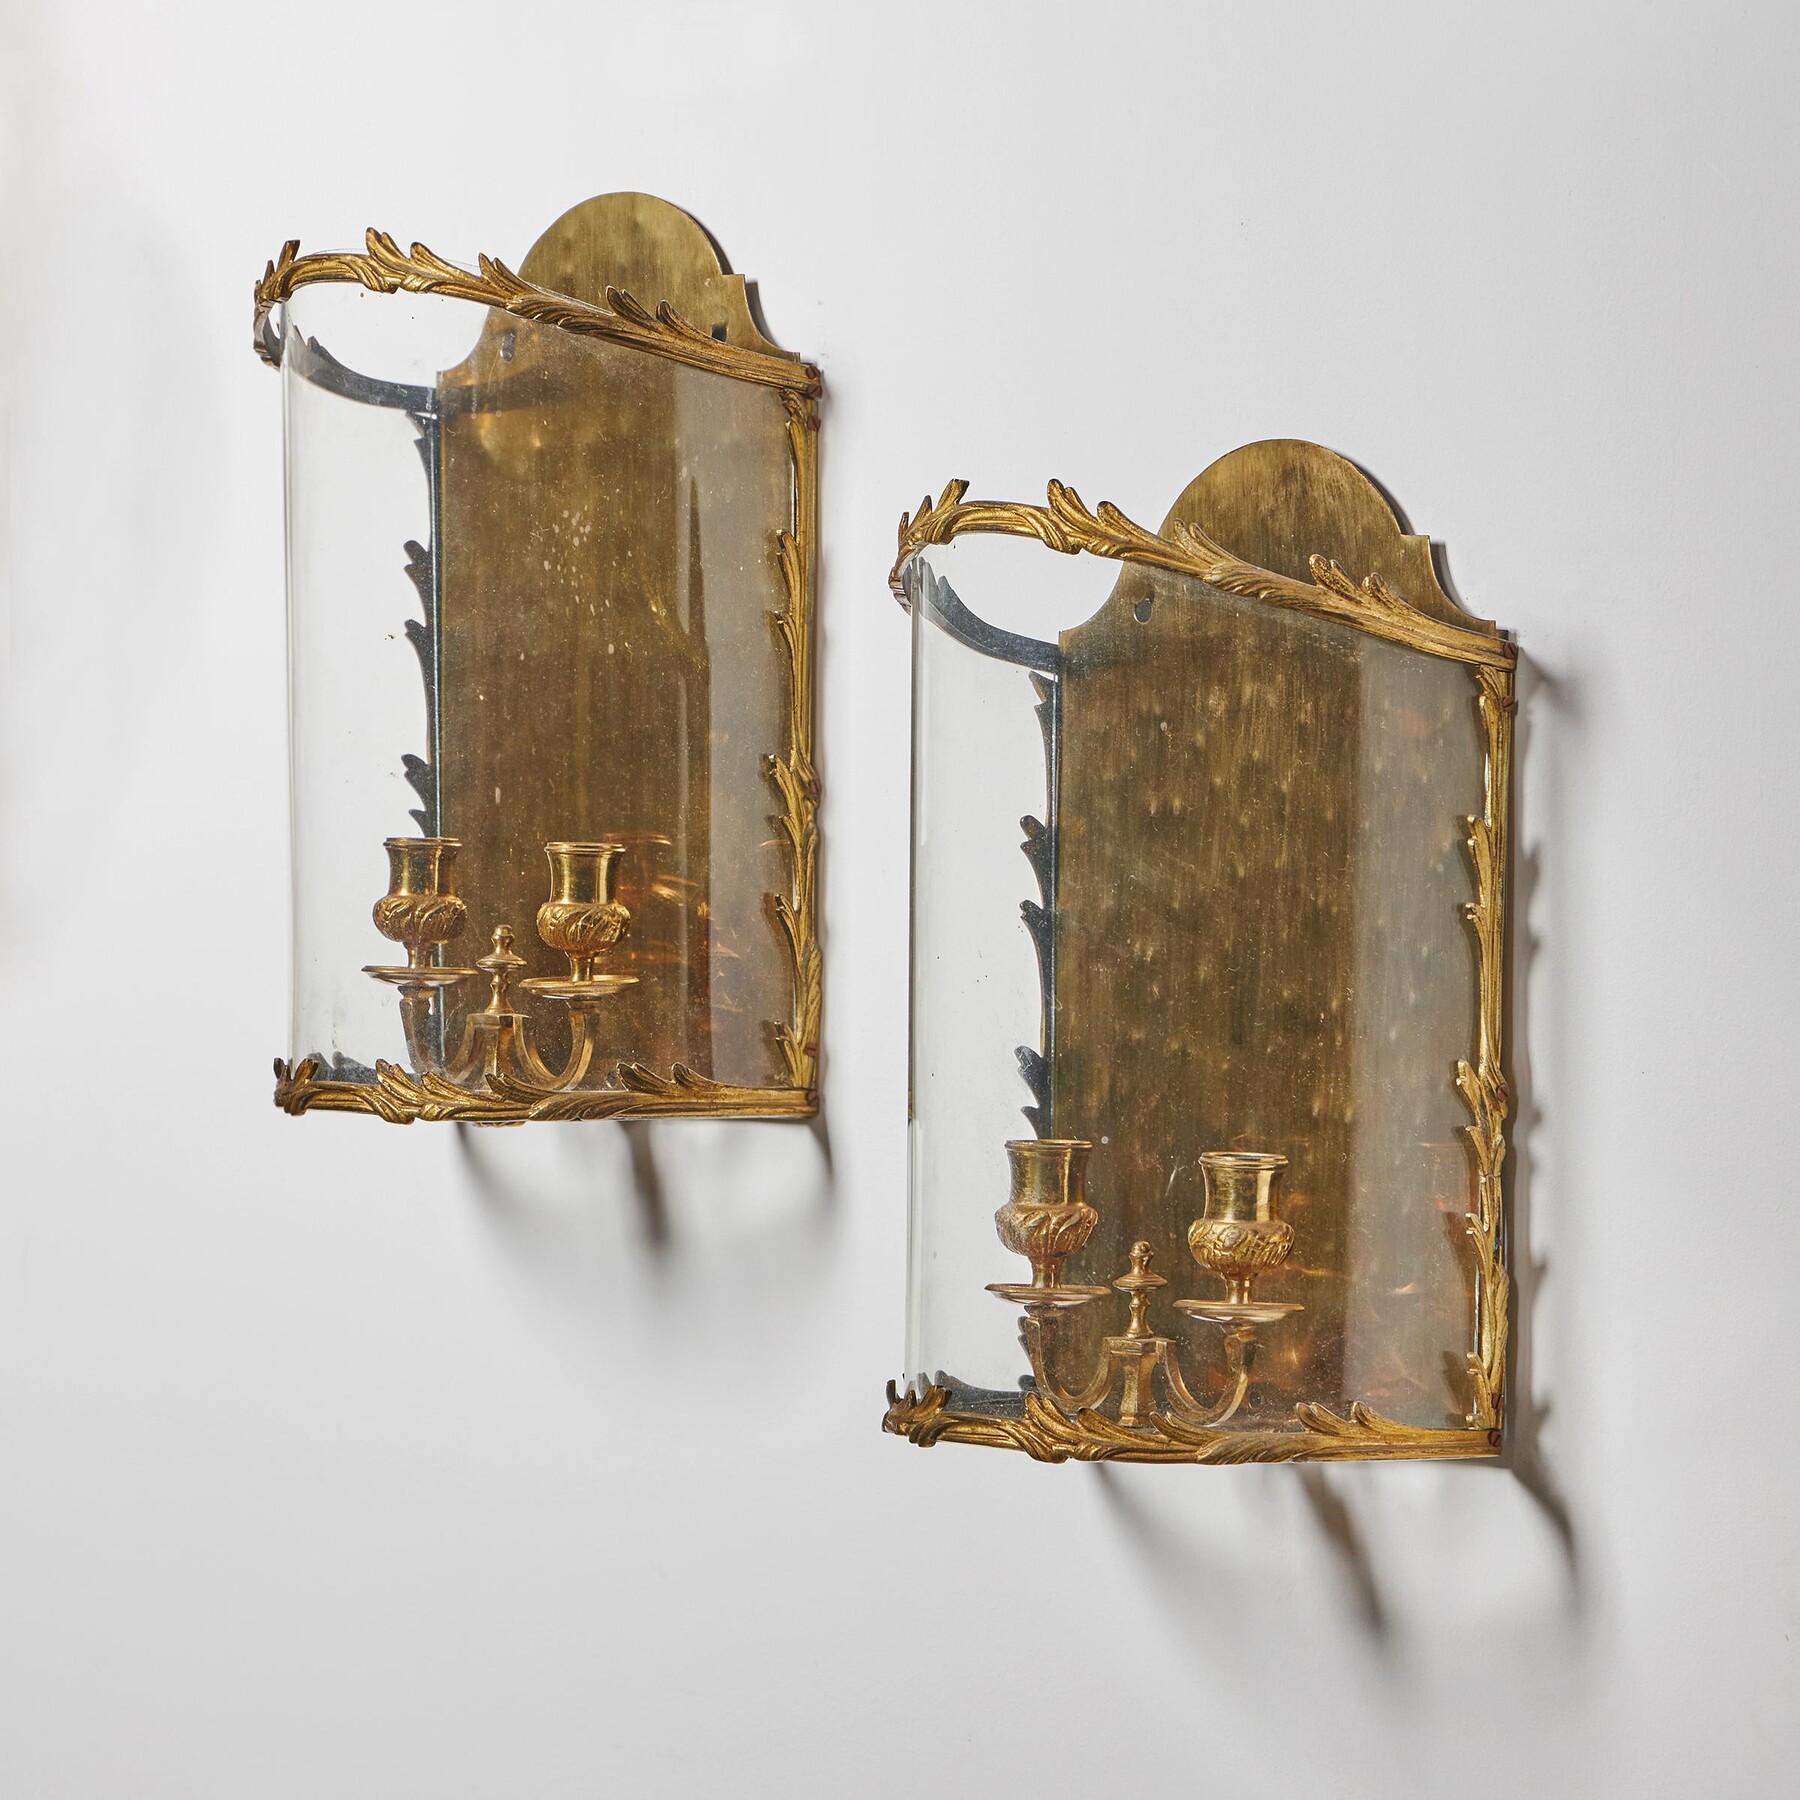 Paire inhabituelle de lanternes murales de style Louis XV du début du 20e siècle en laiton doré avec un front arqué 

Français - Circa 1900

Ces lanternes murales sont dotées de deux bras de bougie finement moulés, fixés à une base en laiton poli et